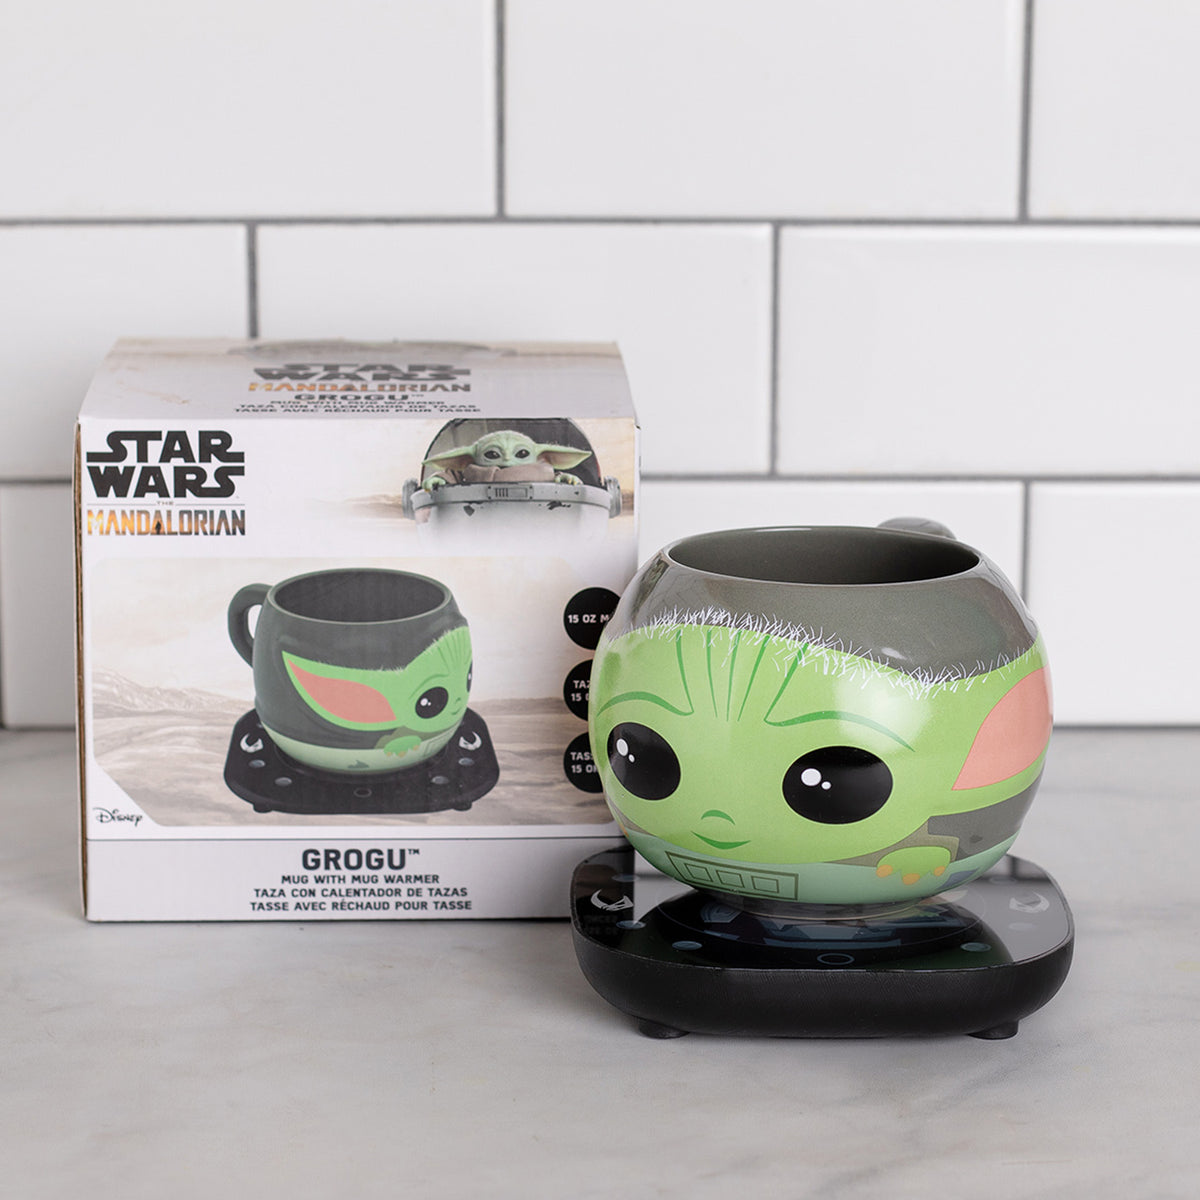 Star Wars A New Hope Mug Warmer Set - Uncanny Brands